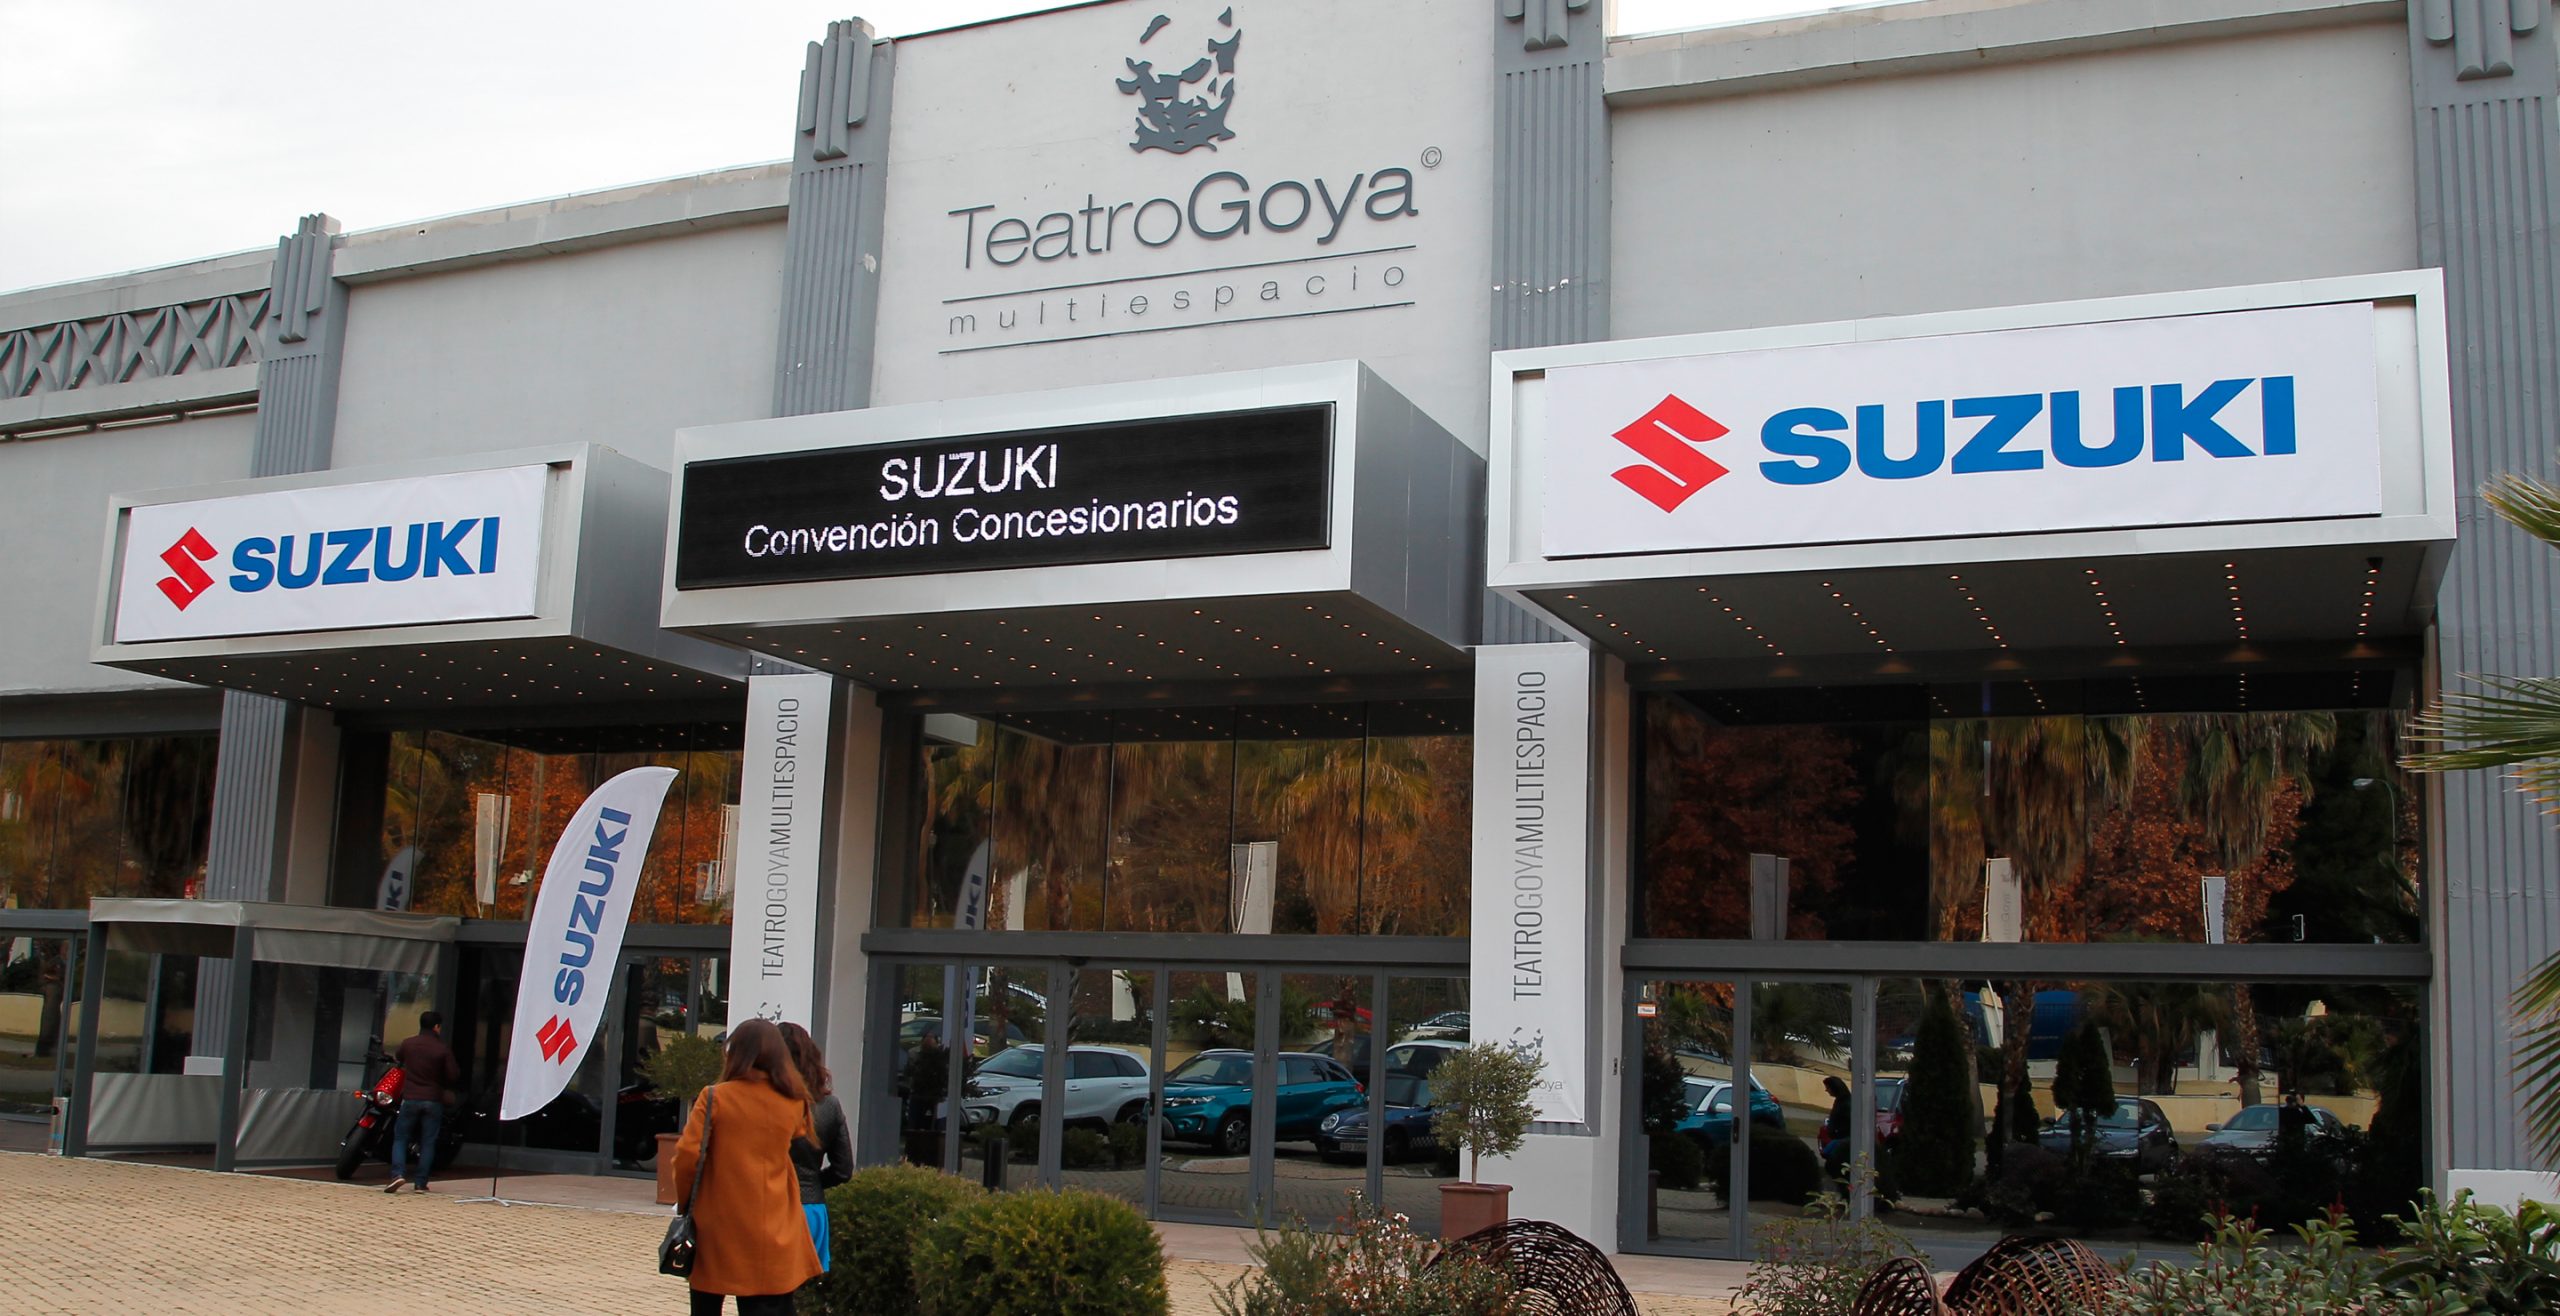 Vista exterior del teatro multiespacio Goya personalizada con banderola, logo y texto Suzuki Convención de Concesionarios